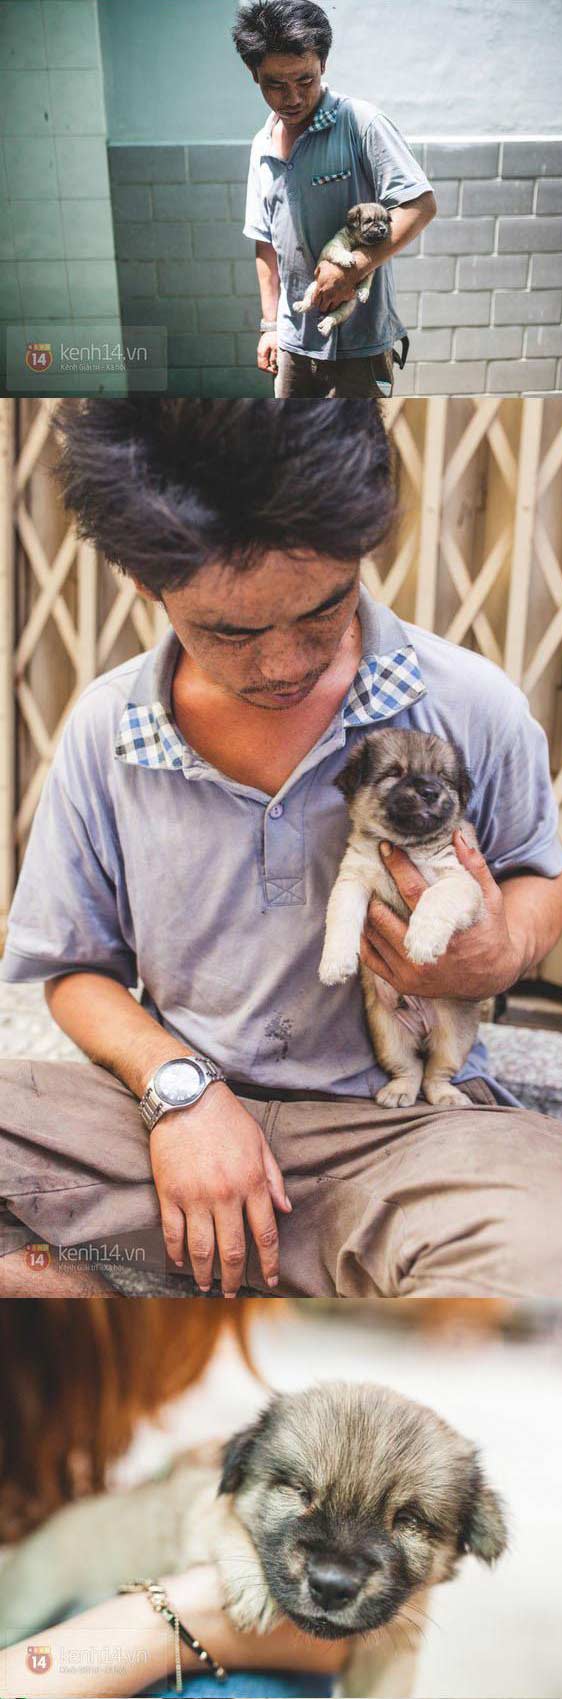 越南无家可归擦鞋者和他的小盲人朋友3